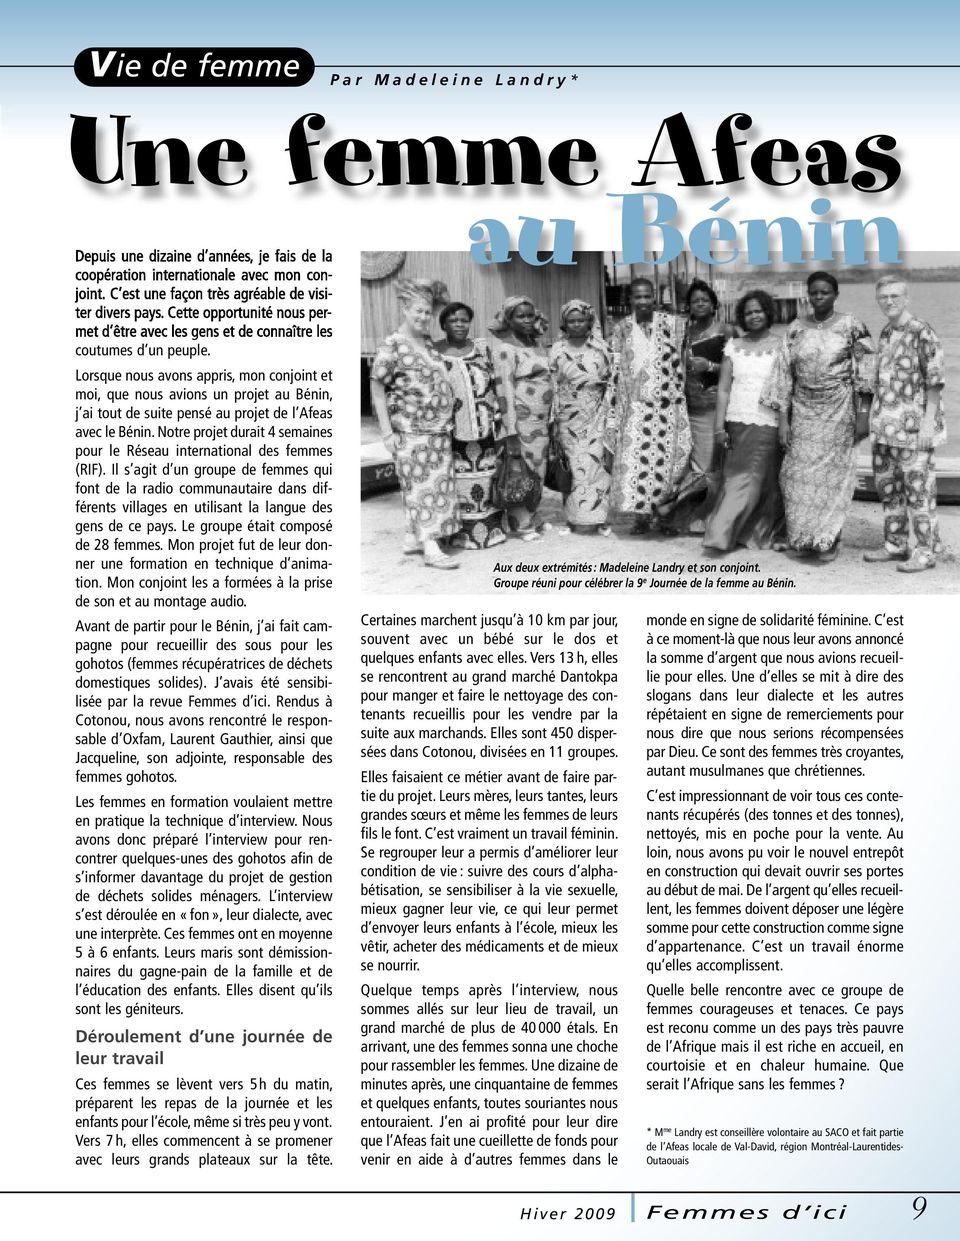 Lorsque nous avons appris, mon conjoint et moi, que nous avions un projet au Bénin, j ai tout de suite pensé au projet de l Afeas avec le Bénin.